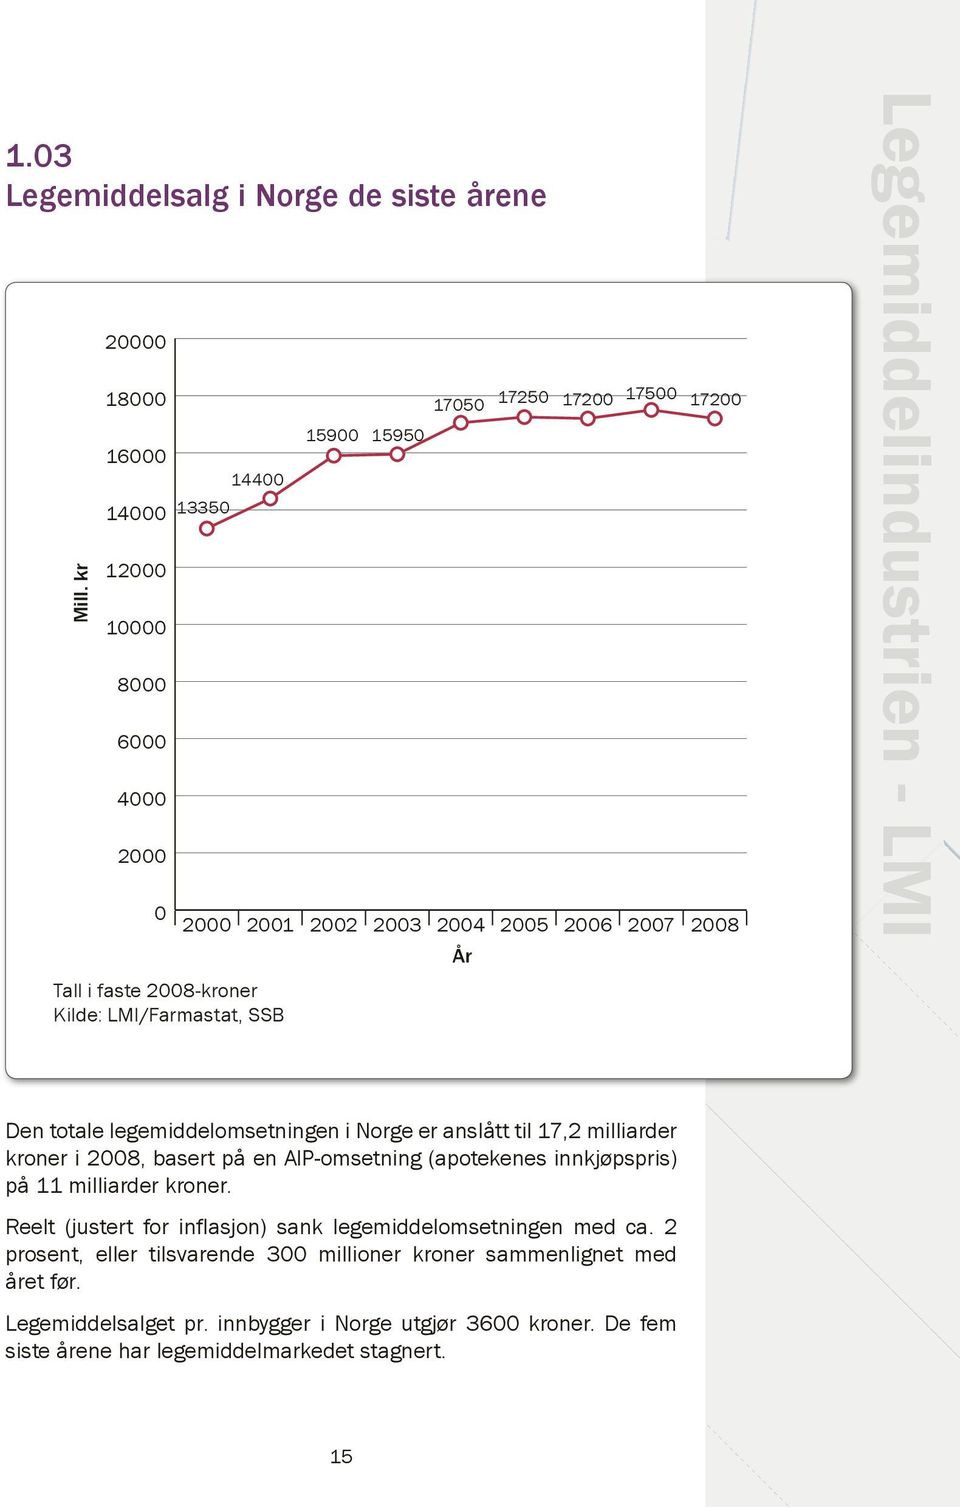 17500 17200 2004 År 2005 2006 2007 2008 Legemiddelindustrien - LMI Den totale legemiddelomsetningen i Norge er anslått til 17,2 milliarder kroner i 2008, basert på en